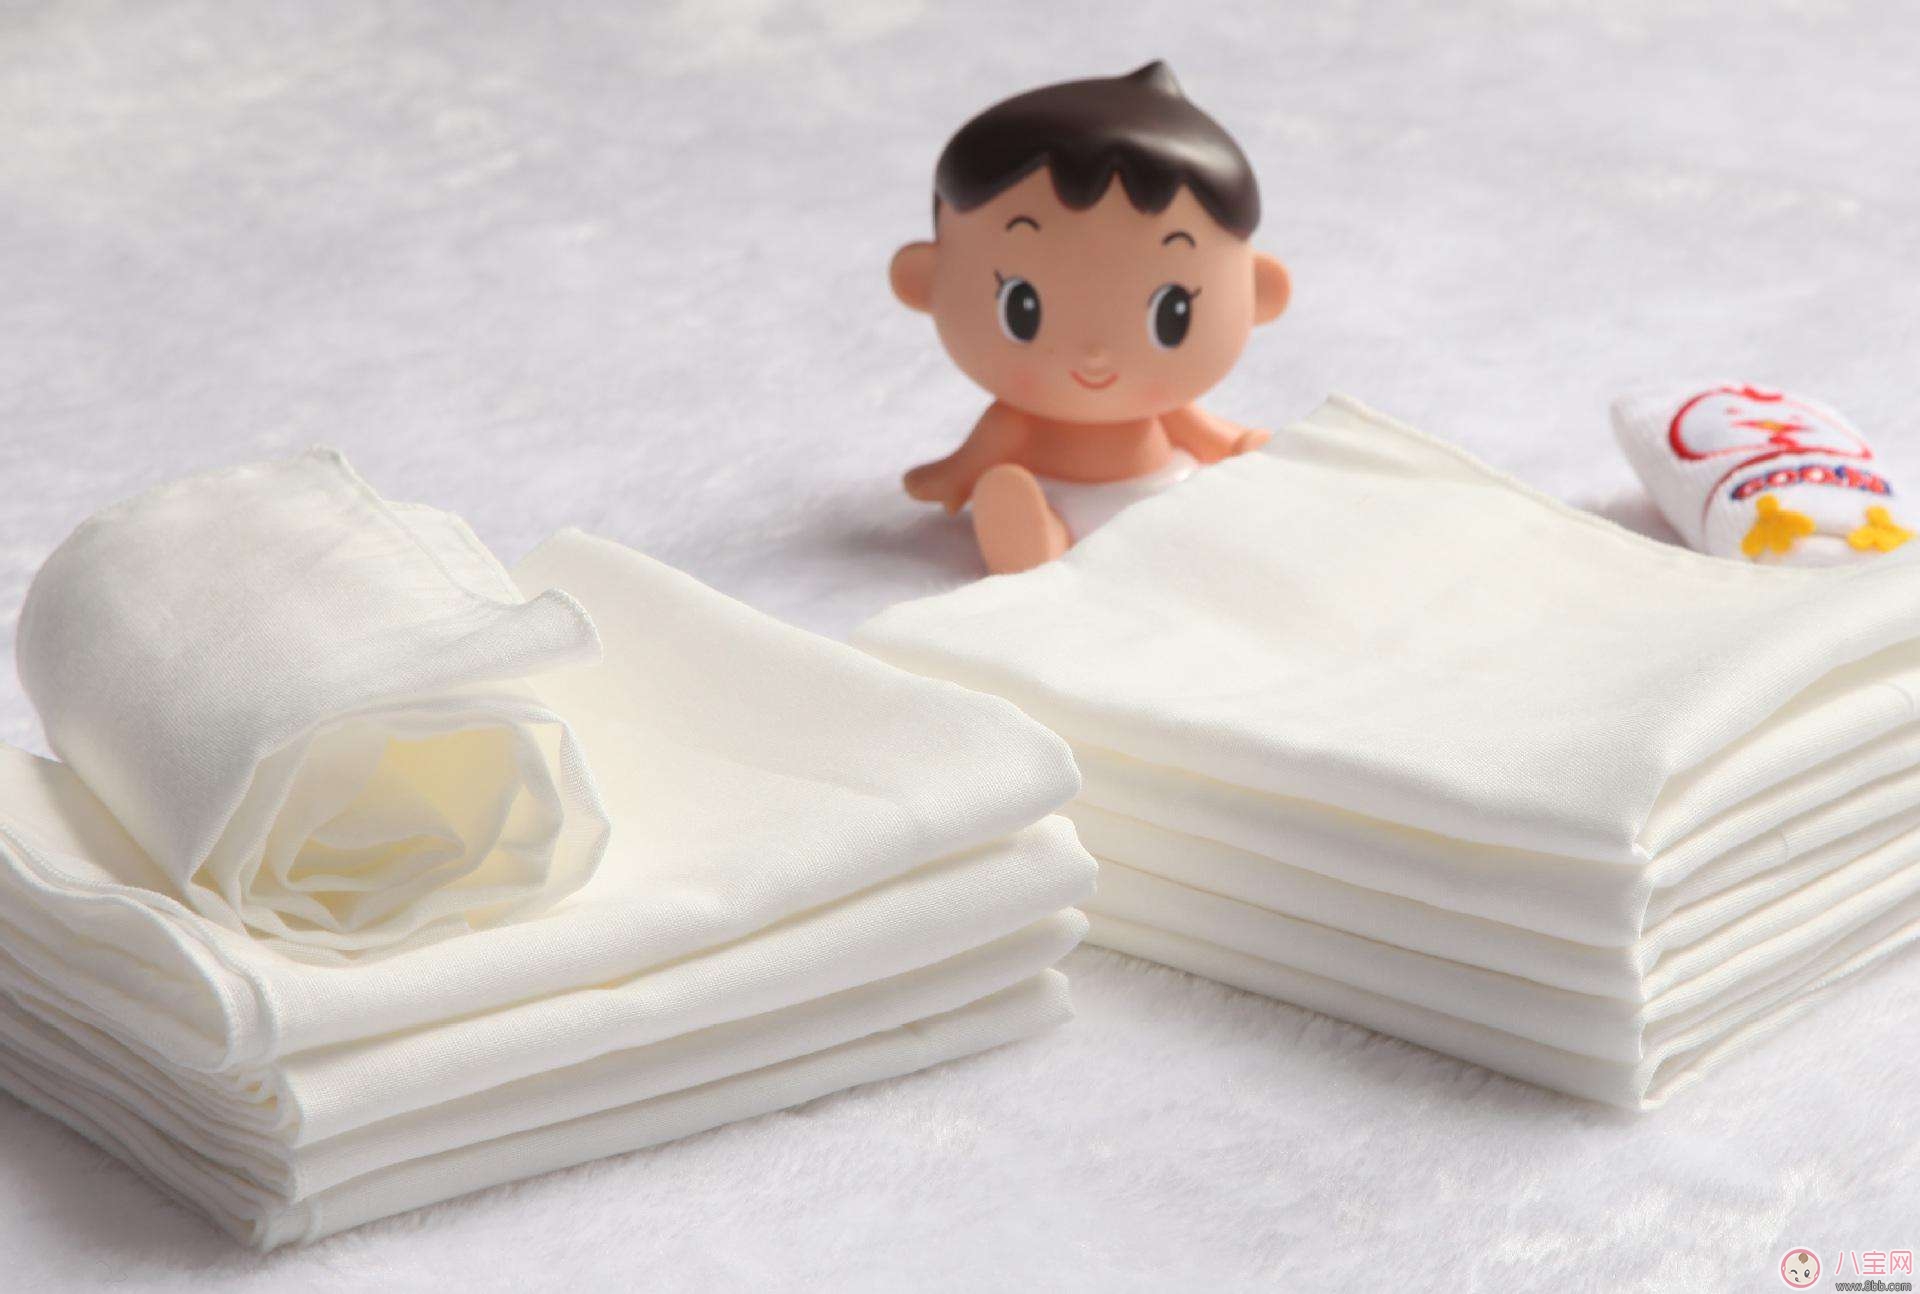 更换宝宝尿布注意事项 如何选择宝宝尿布